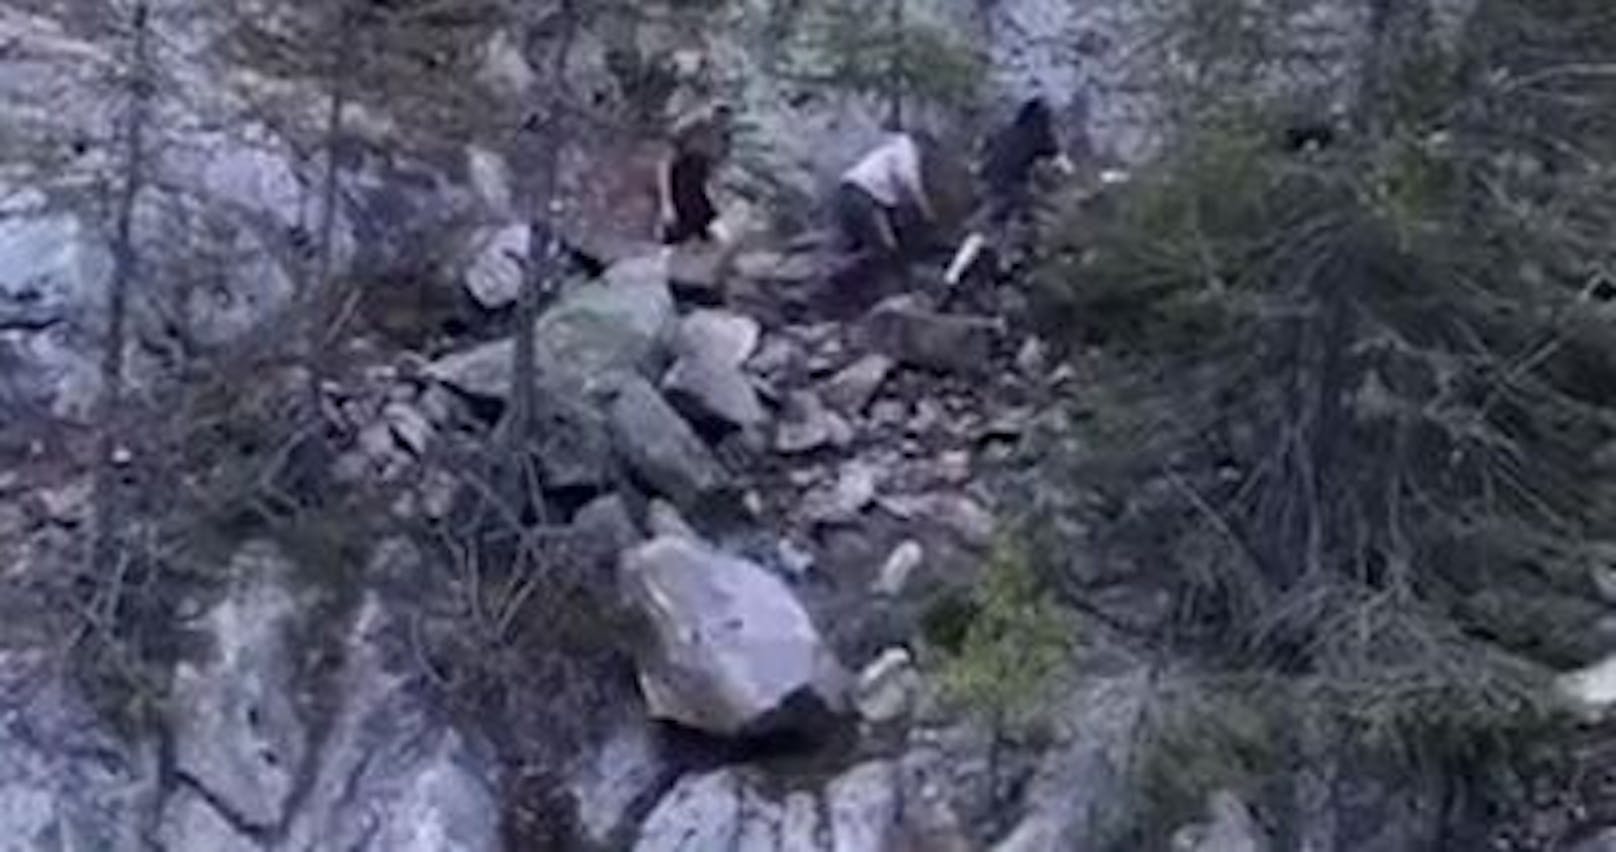 Schweizer Jugendliche lösten nicht nur einen großen Felsbrocken für ein Tiktok-Video (siehe unten), sondern auch einen Shitstorm aus.